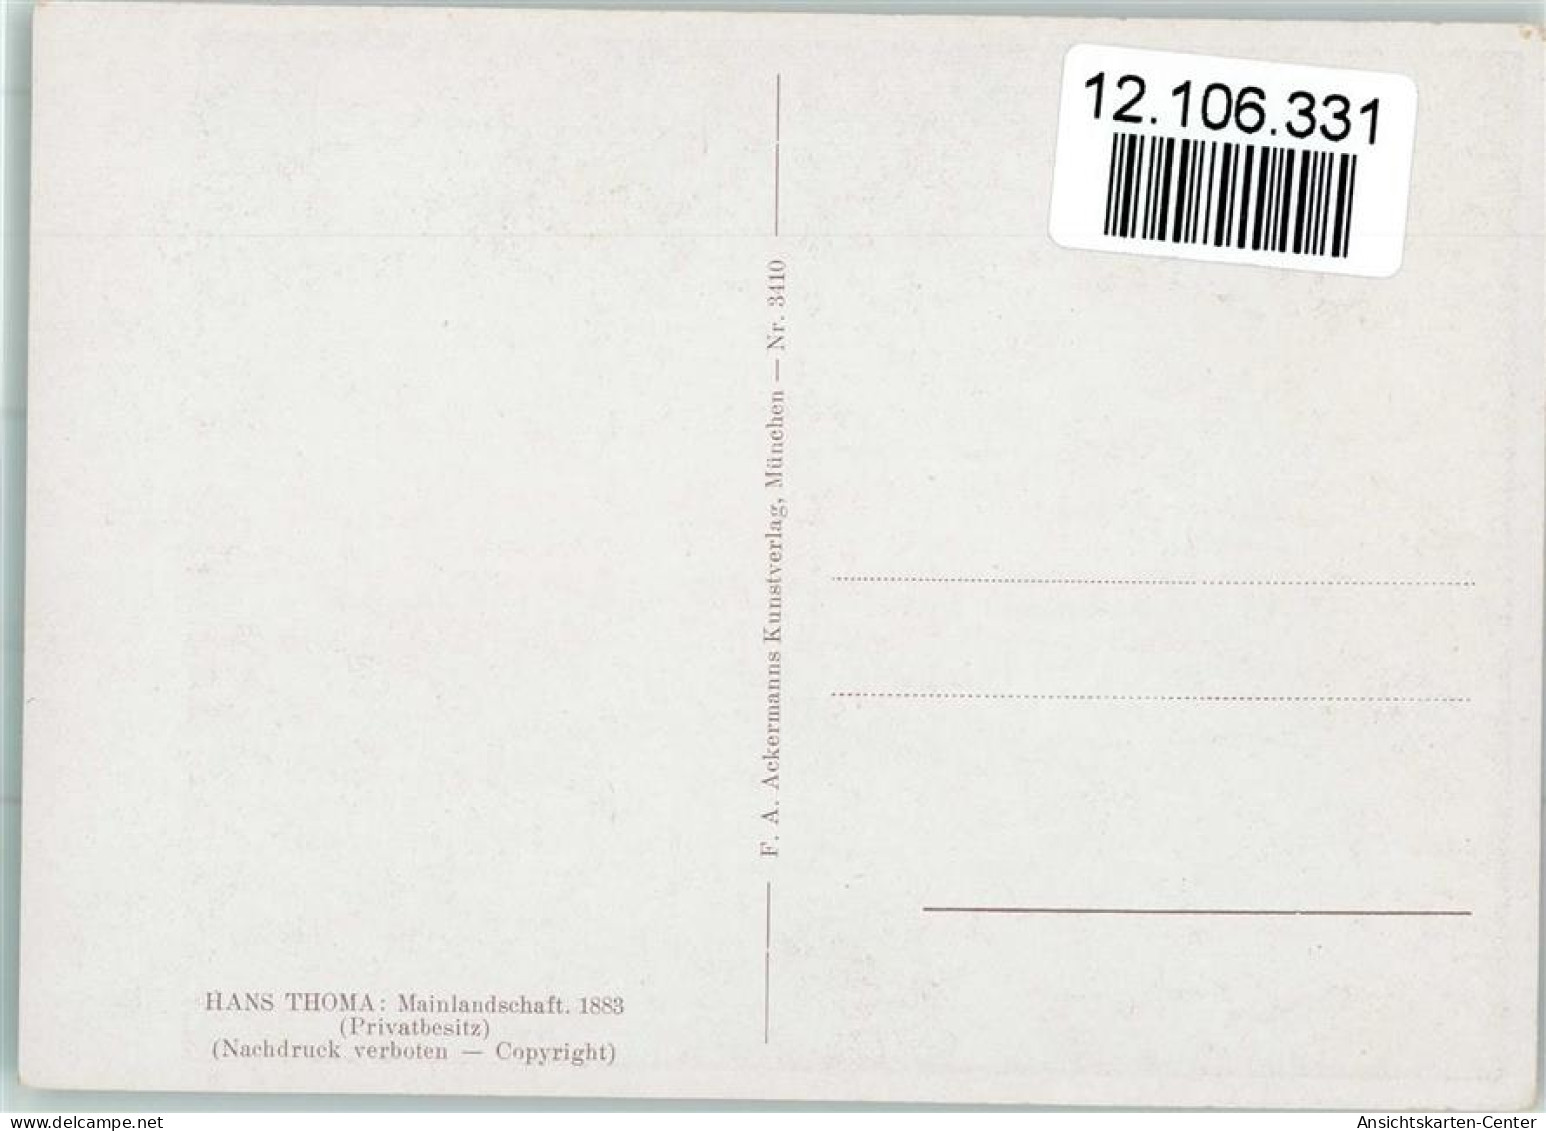 12106331 - Thoma Hans Mainlandschaft - Verlag - Thoma, Hans